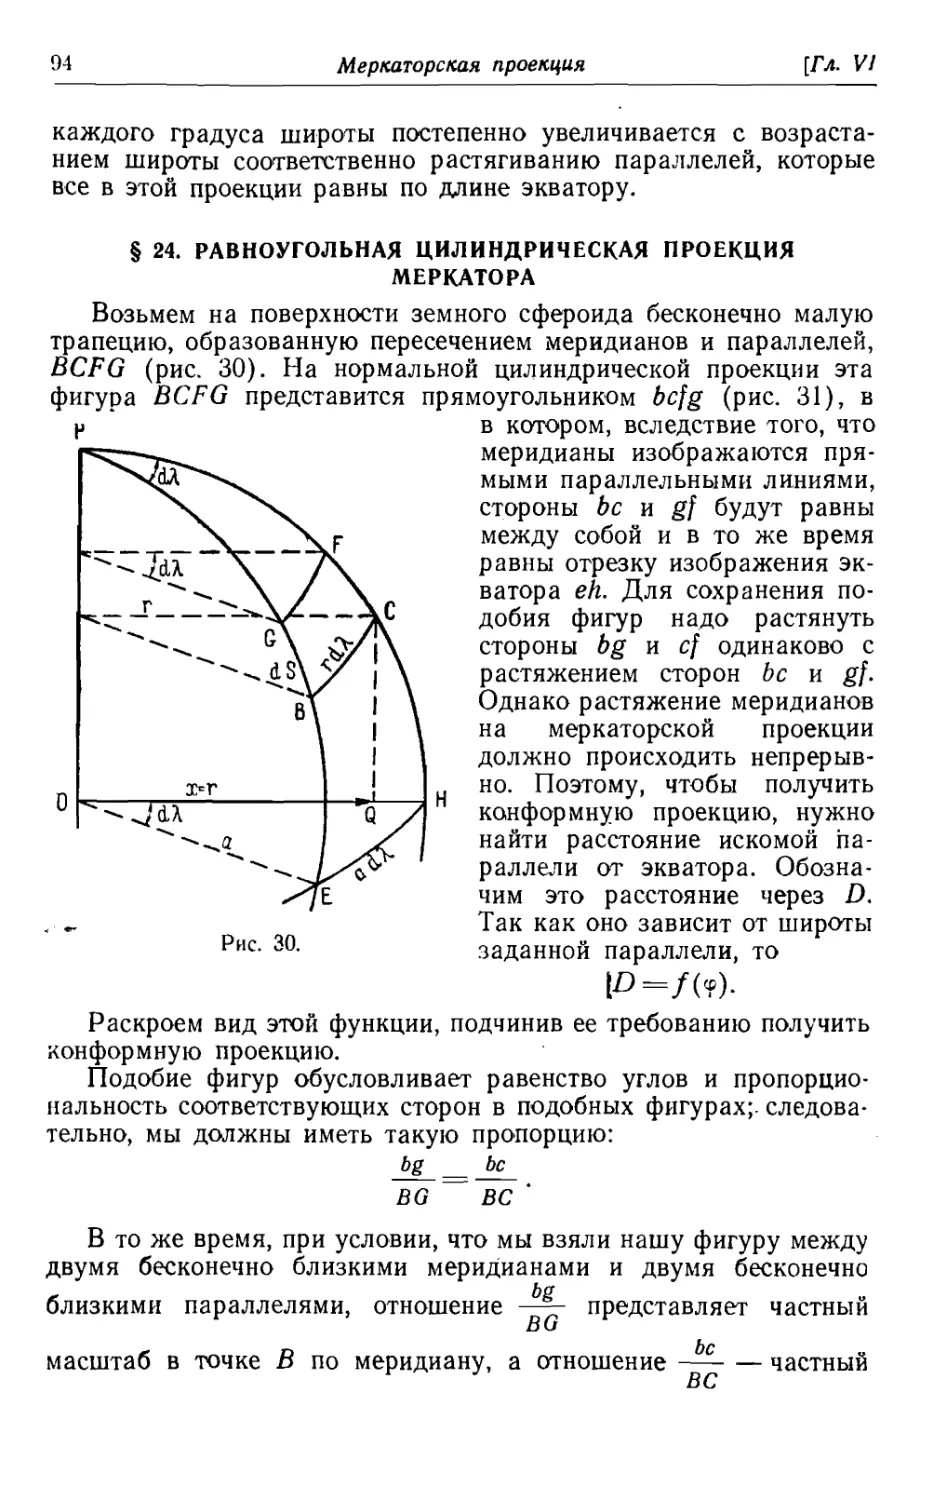 24. Равноугольная цилиндрическая проекция меркатора